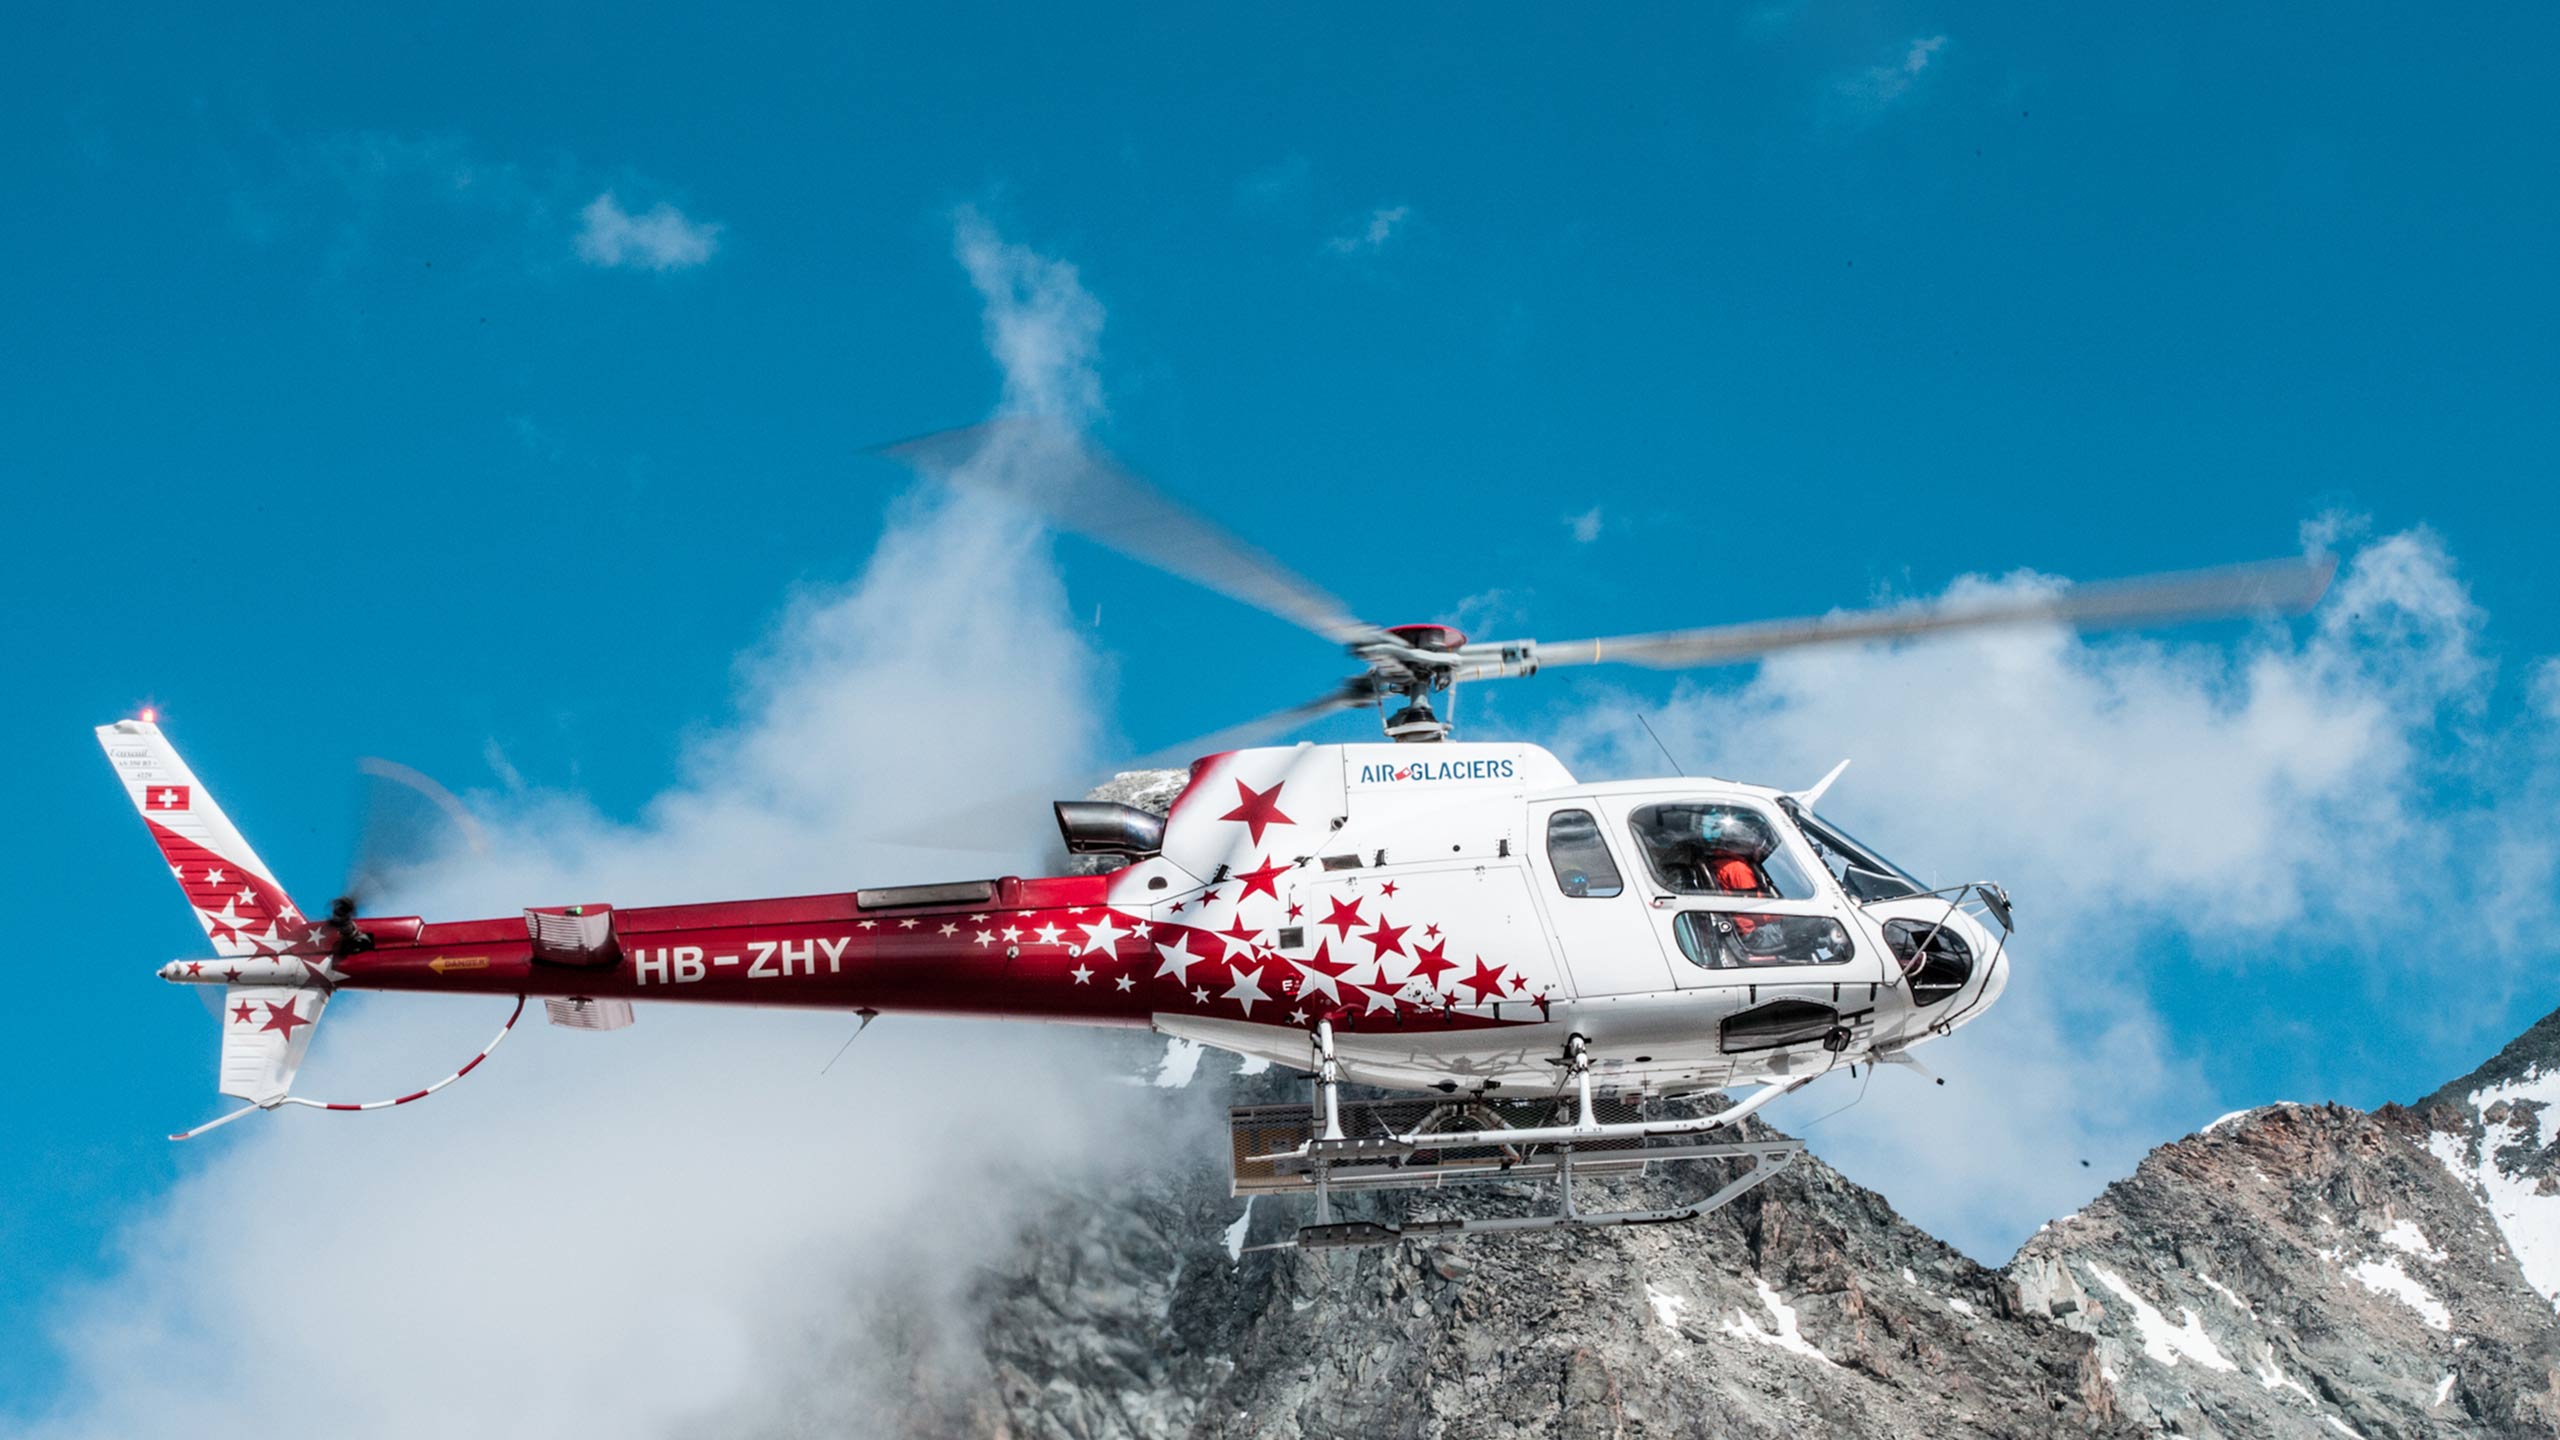 air-glaciers-helikopter-flug-berge-schnee-bild-2.jpg